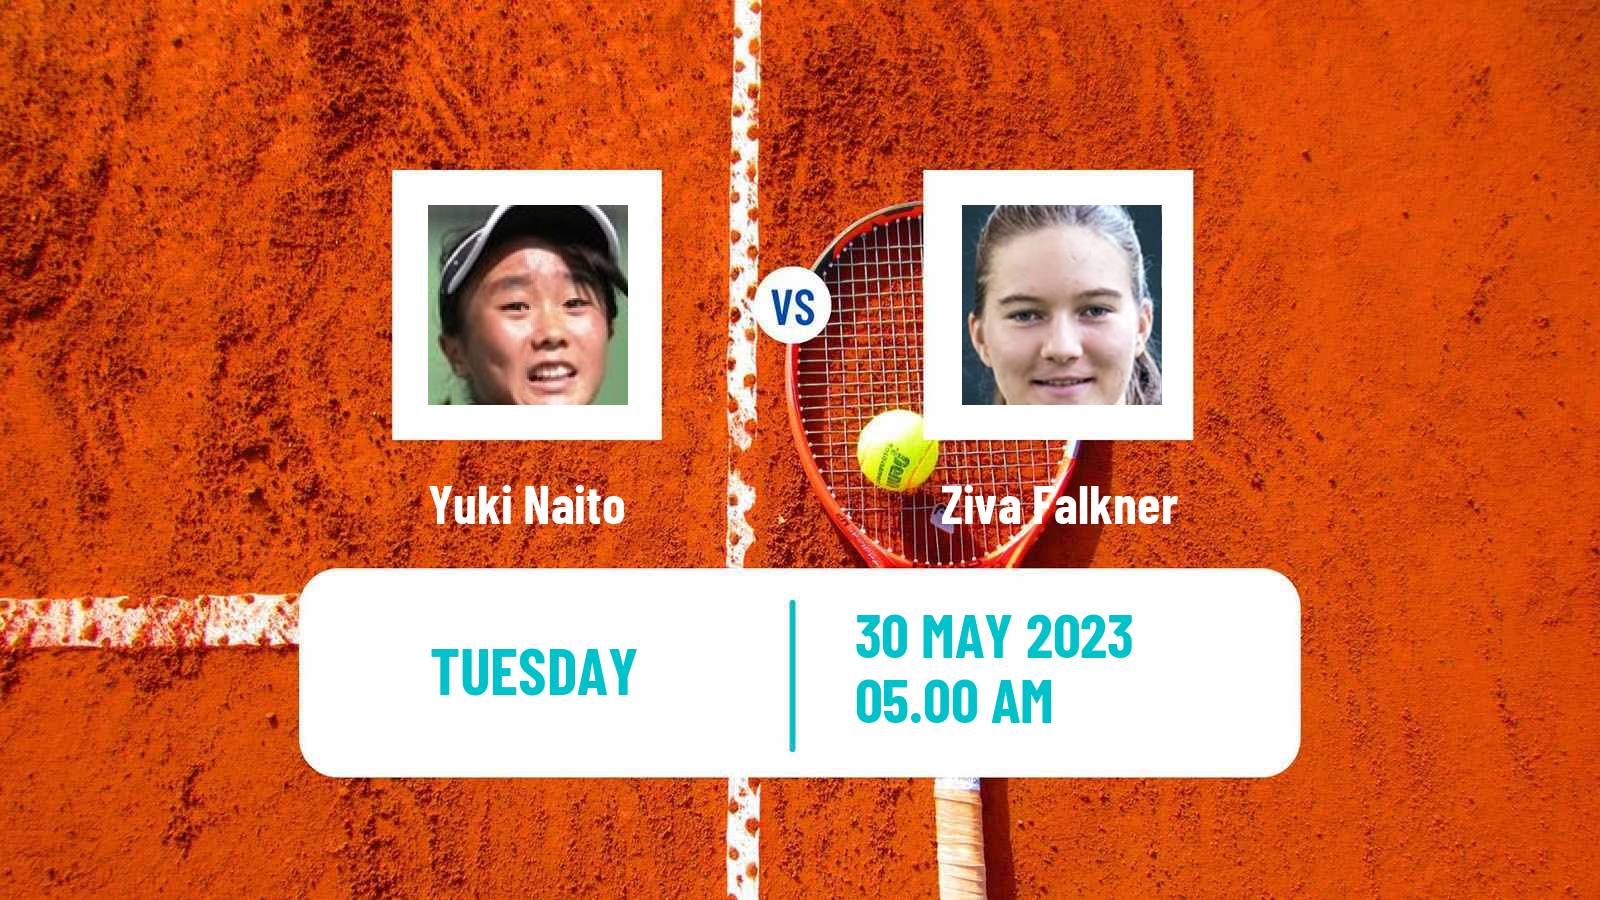 Tennis ITF W40 Otocec 2 Women Yuki Naito - Ziva Falkner